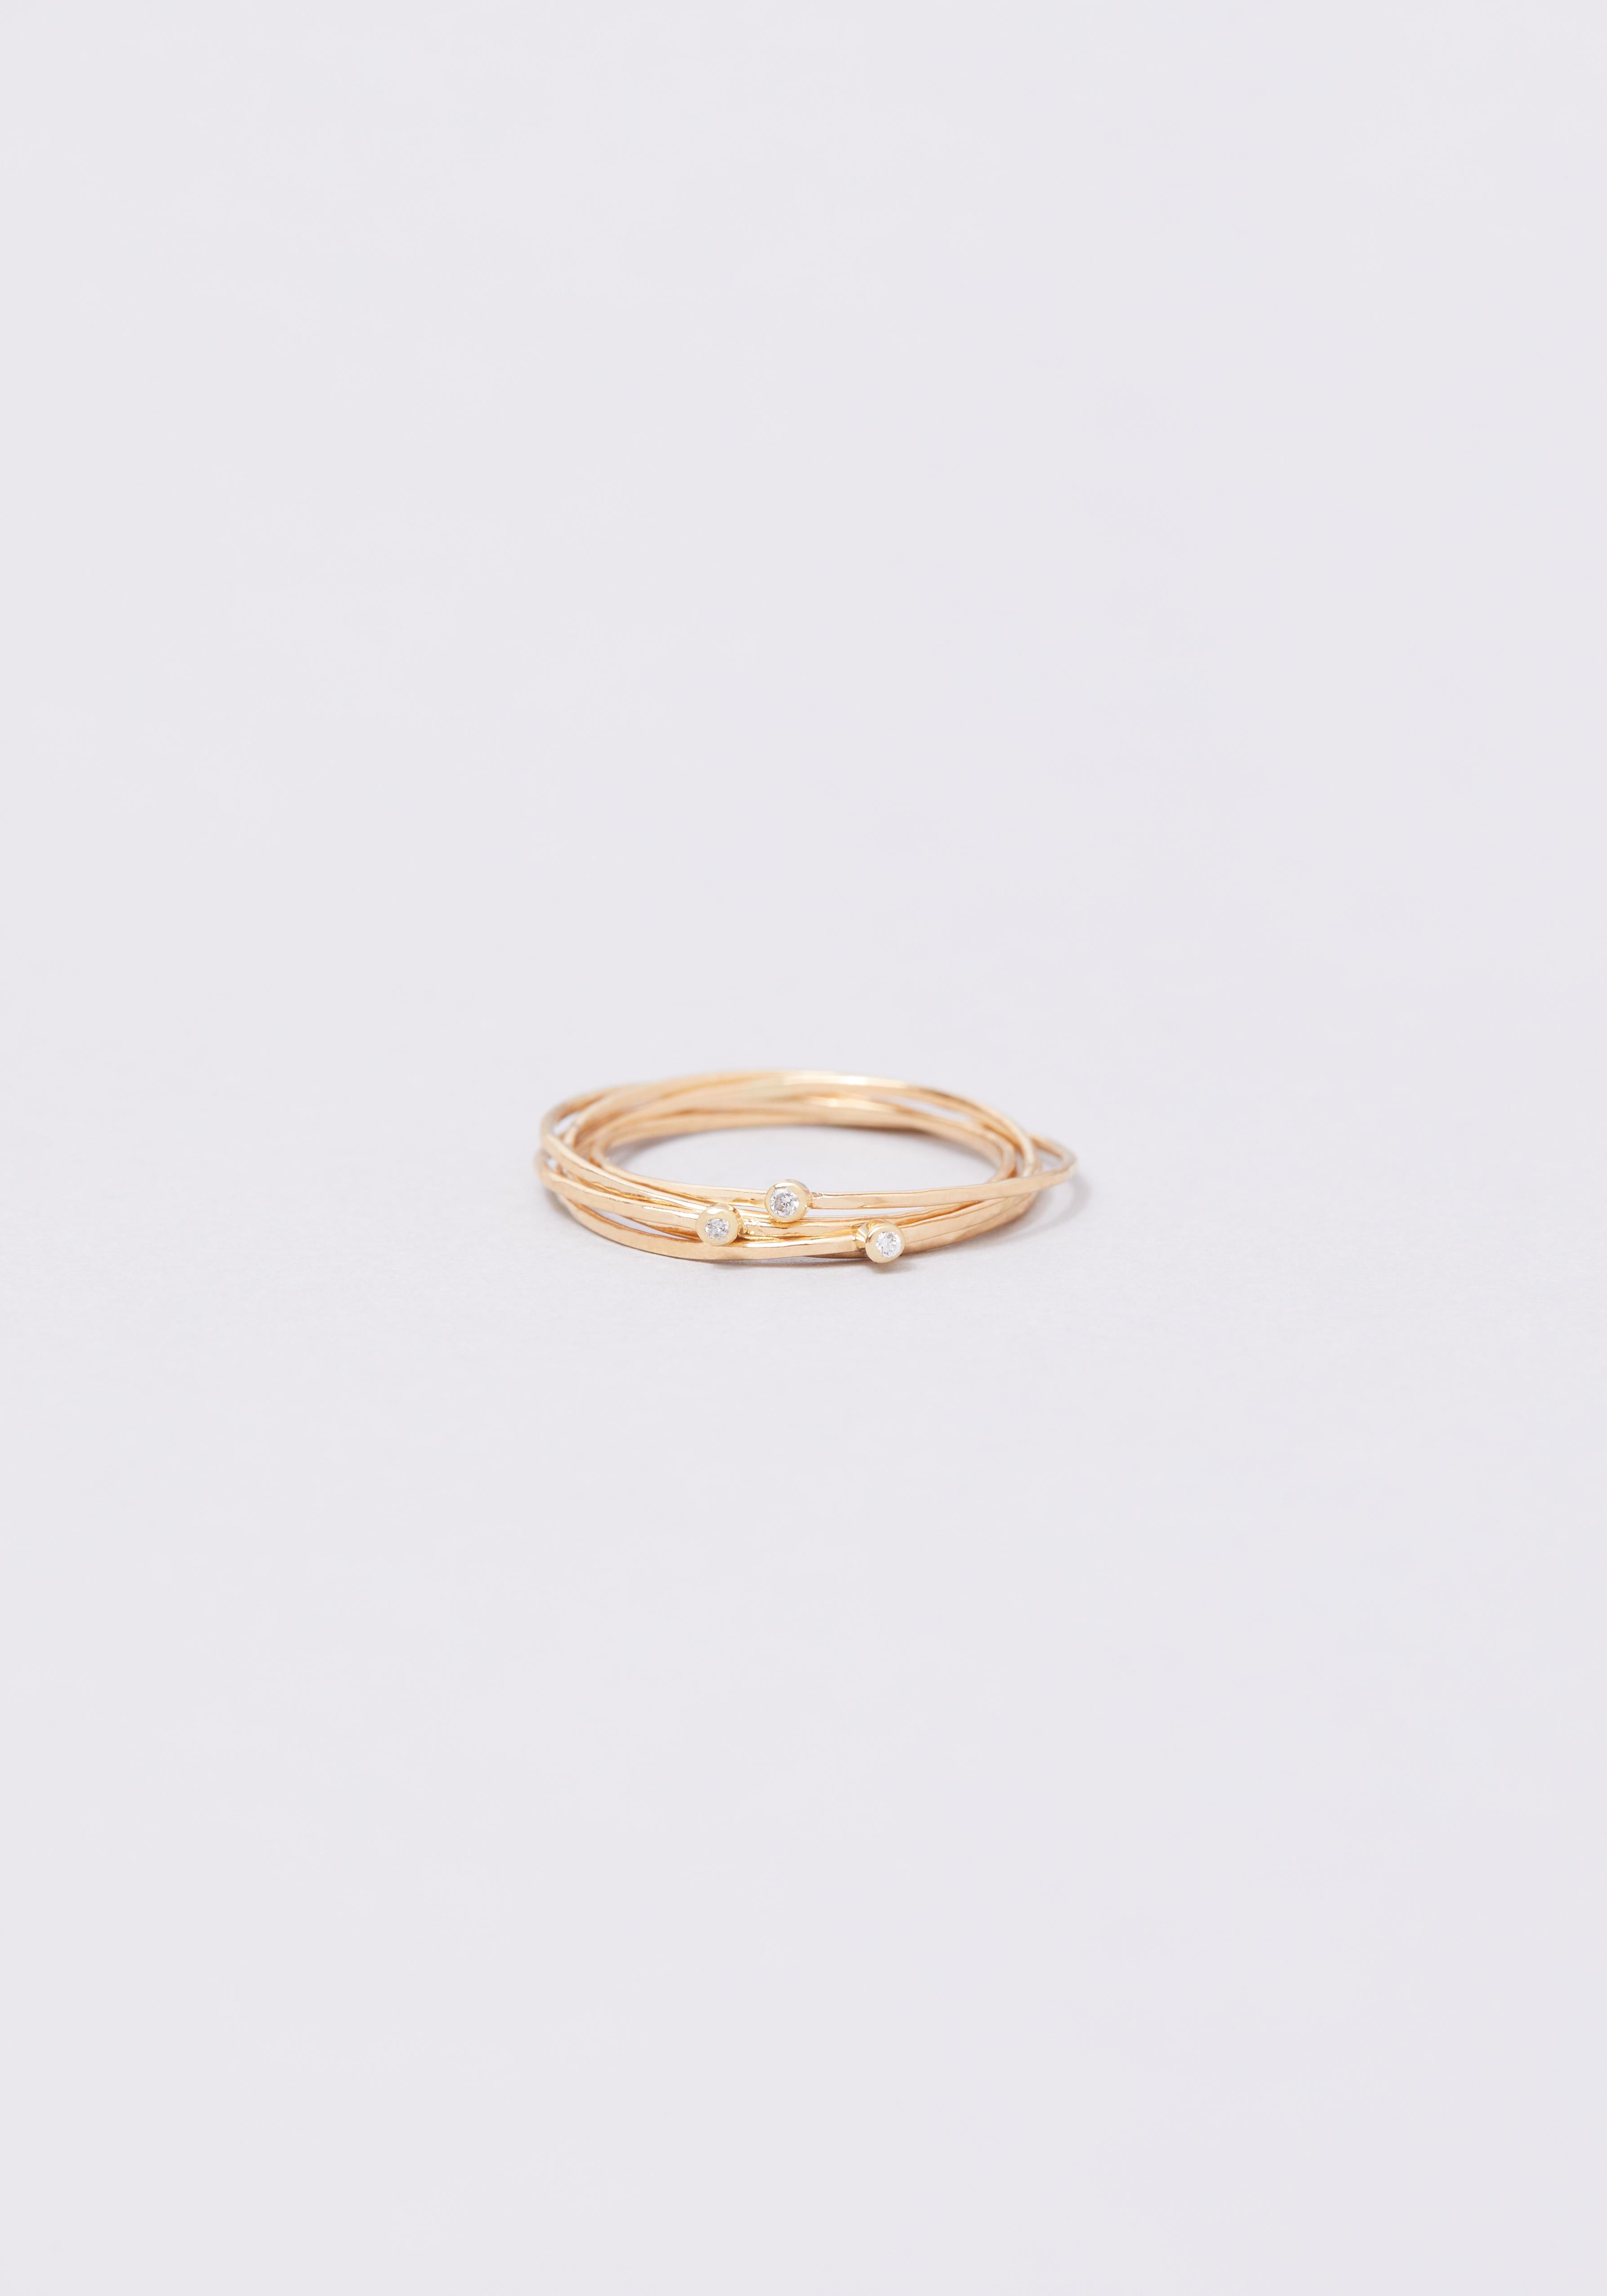 Der Ring Olympe 3 tubes aus 18-karätigem Gold ist eine Variante des Olympe-Rings, der ersten Kreation von Monsieur Paris, und besteht aus fünf ineinander verschlungenen Bändern mit weißen Diamanten. Der Ring Olympe 3 tubes ist in Gelb-, Rosé- oder